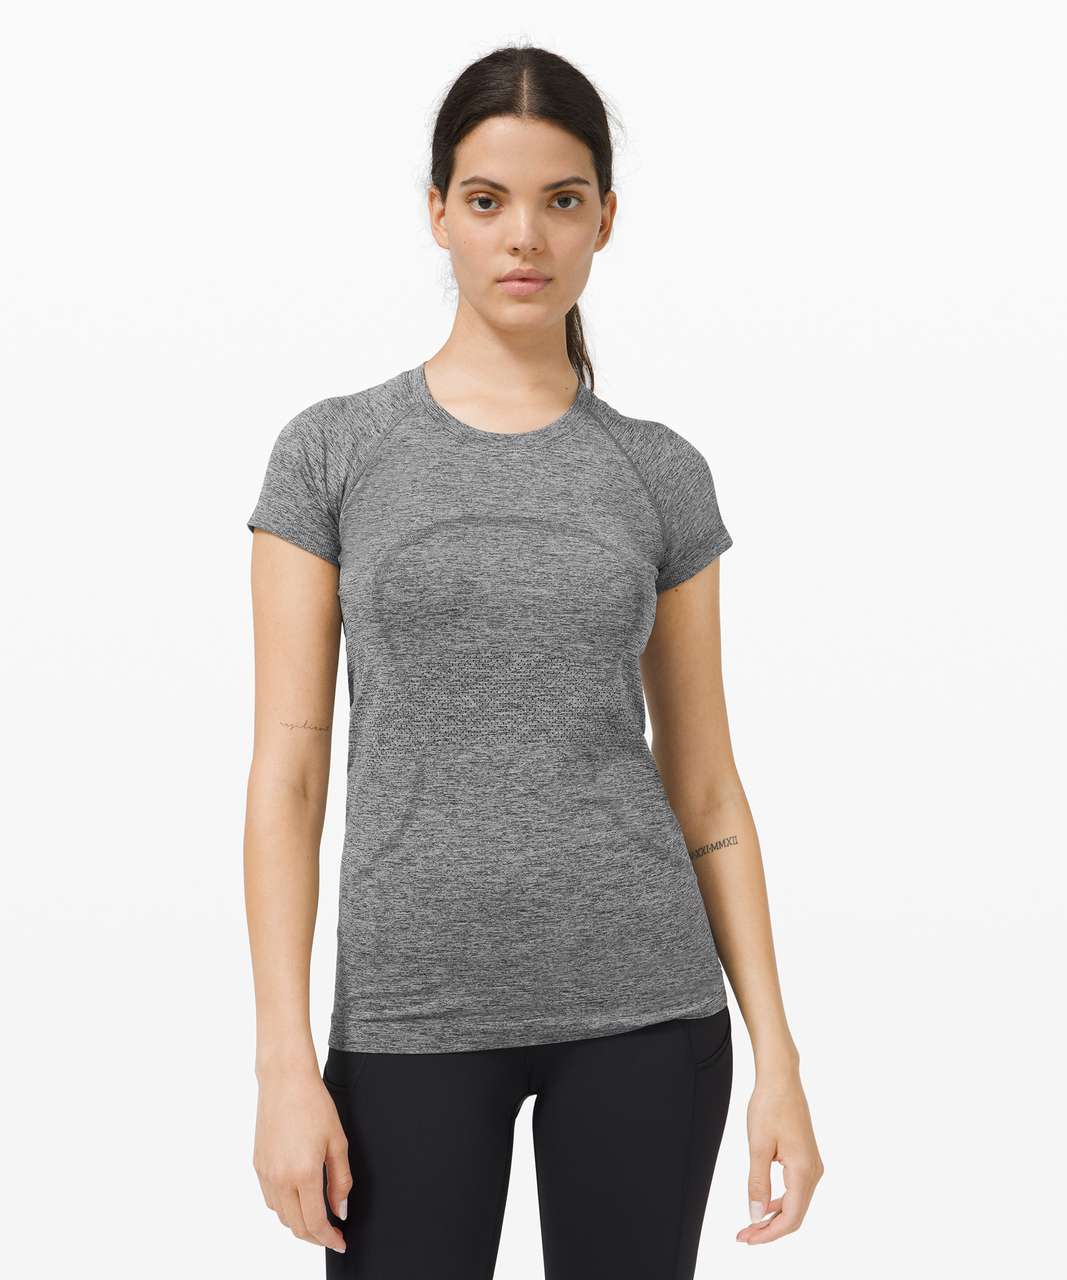 Clemson lululemon Women's Swiftly Tech Short Sleeve Shirt 2.0